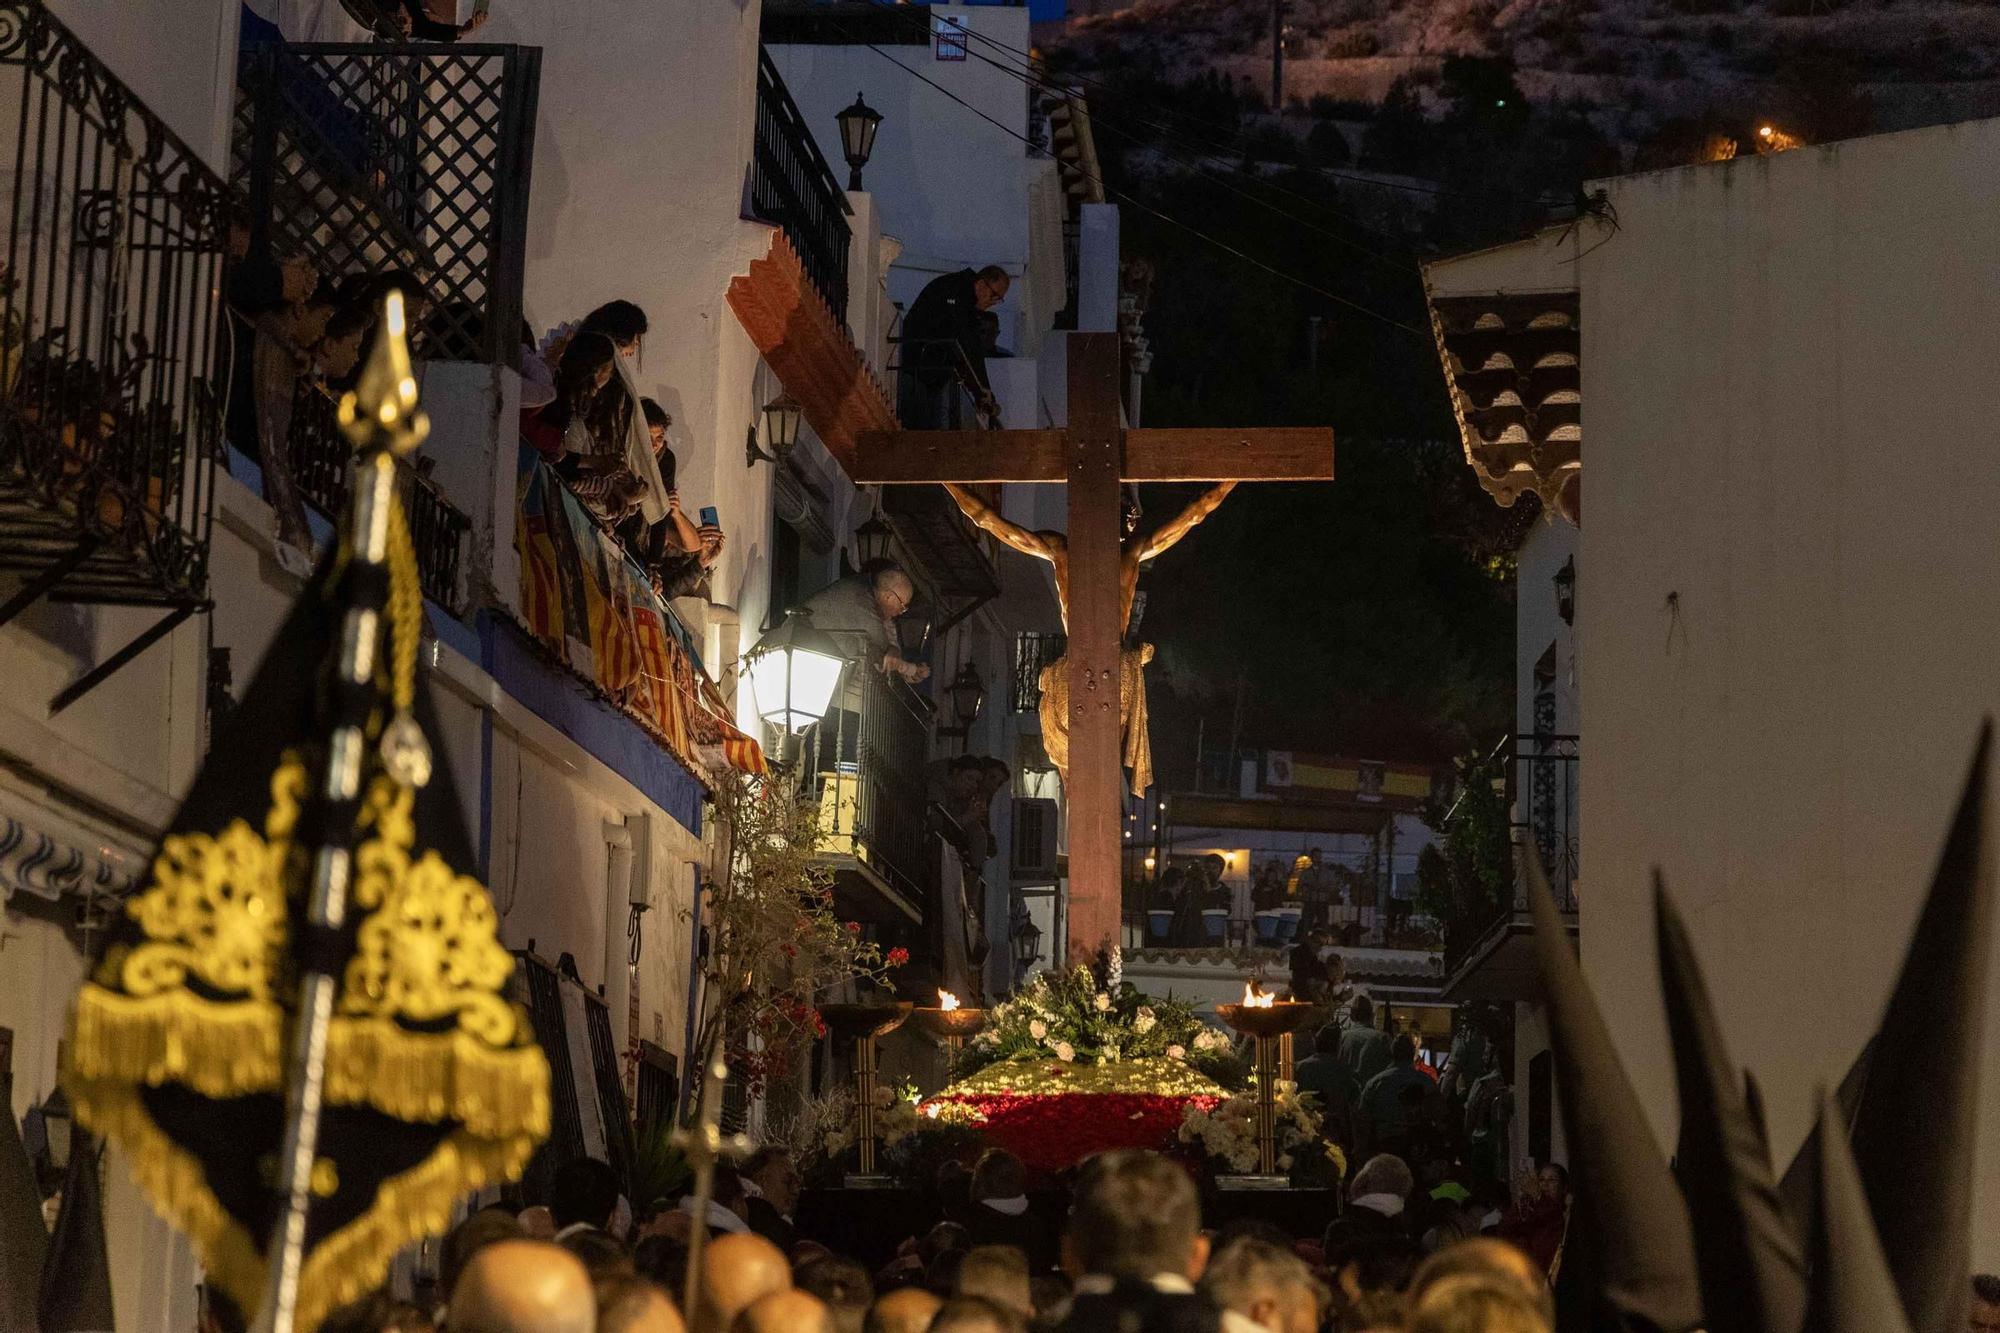 Santa Cruz no defrauda el Miercoles Santo en Alicante